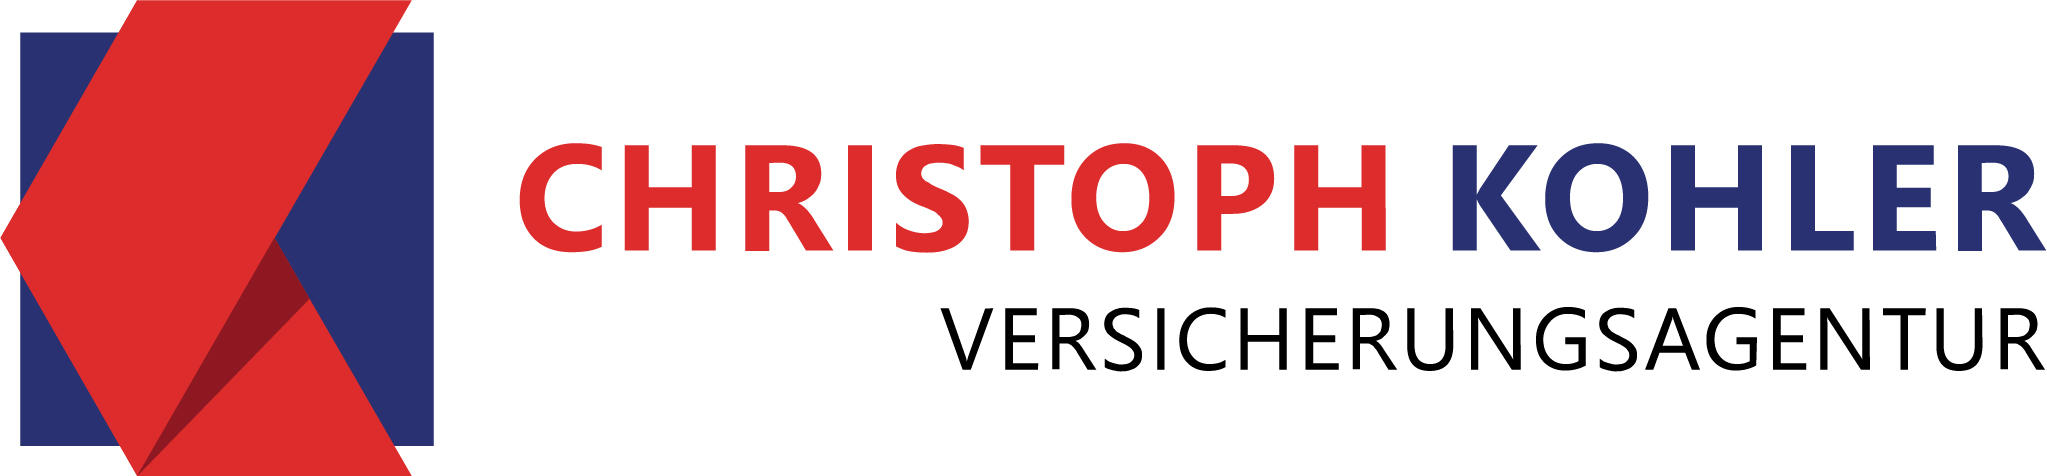 Kundenbild groß 8 DBV Deutsche Beamtenversicherung Christoph Kohler in Baden-Baden